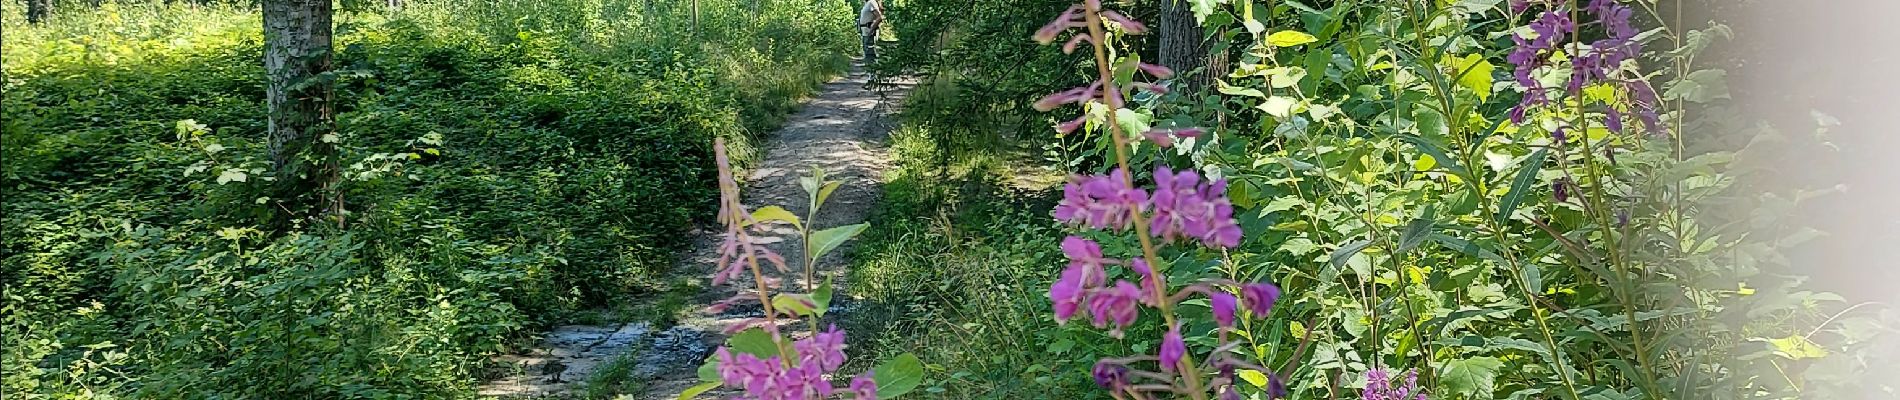 Trail Walking Fleurus - forêt des loisirs Fleurus - Photo